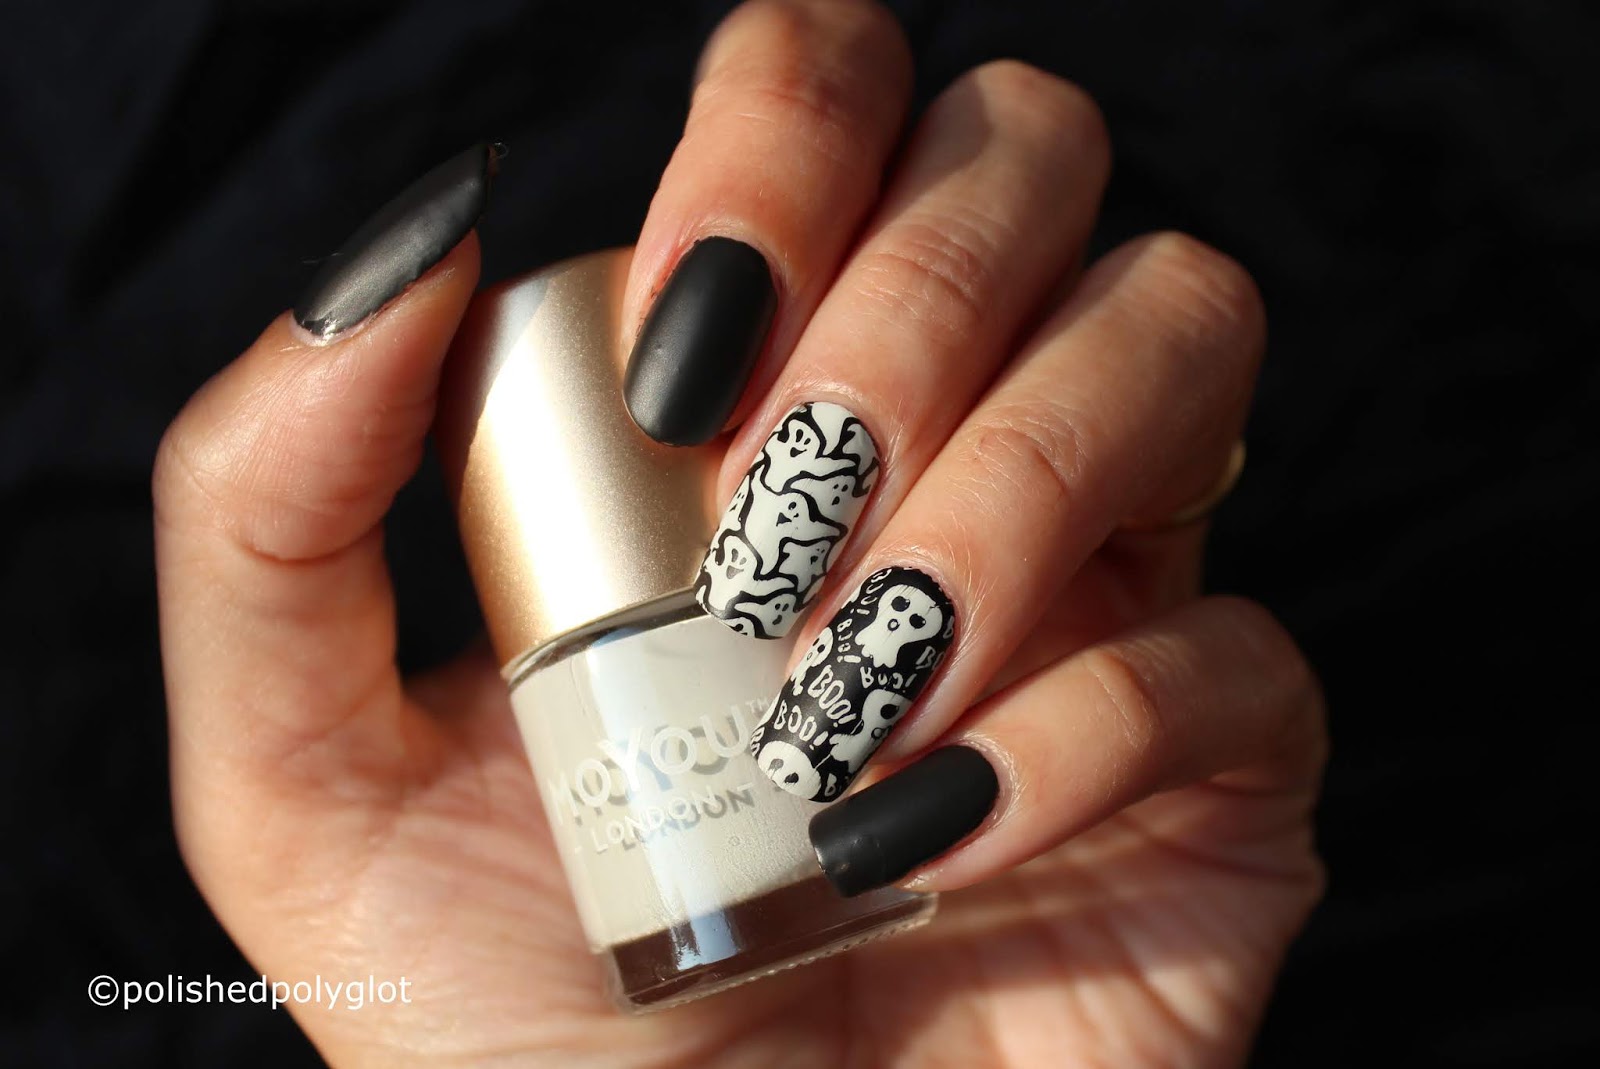 Nail Art │ Mermaid Manicure using BeautyBigBang Products